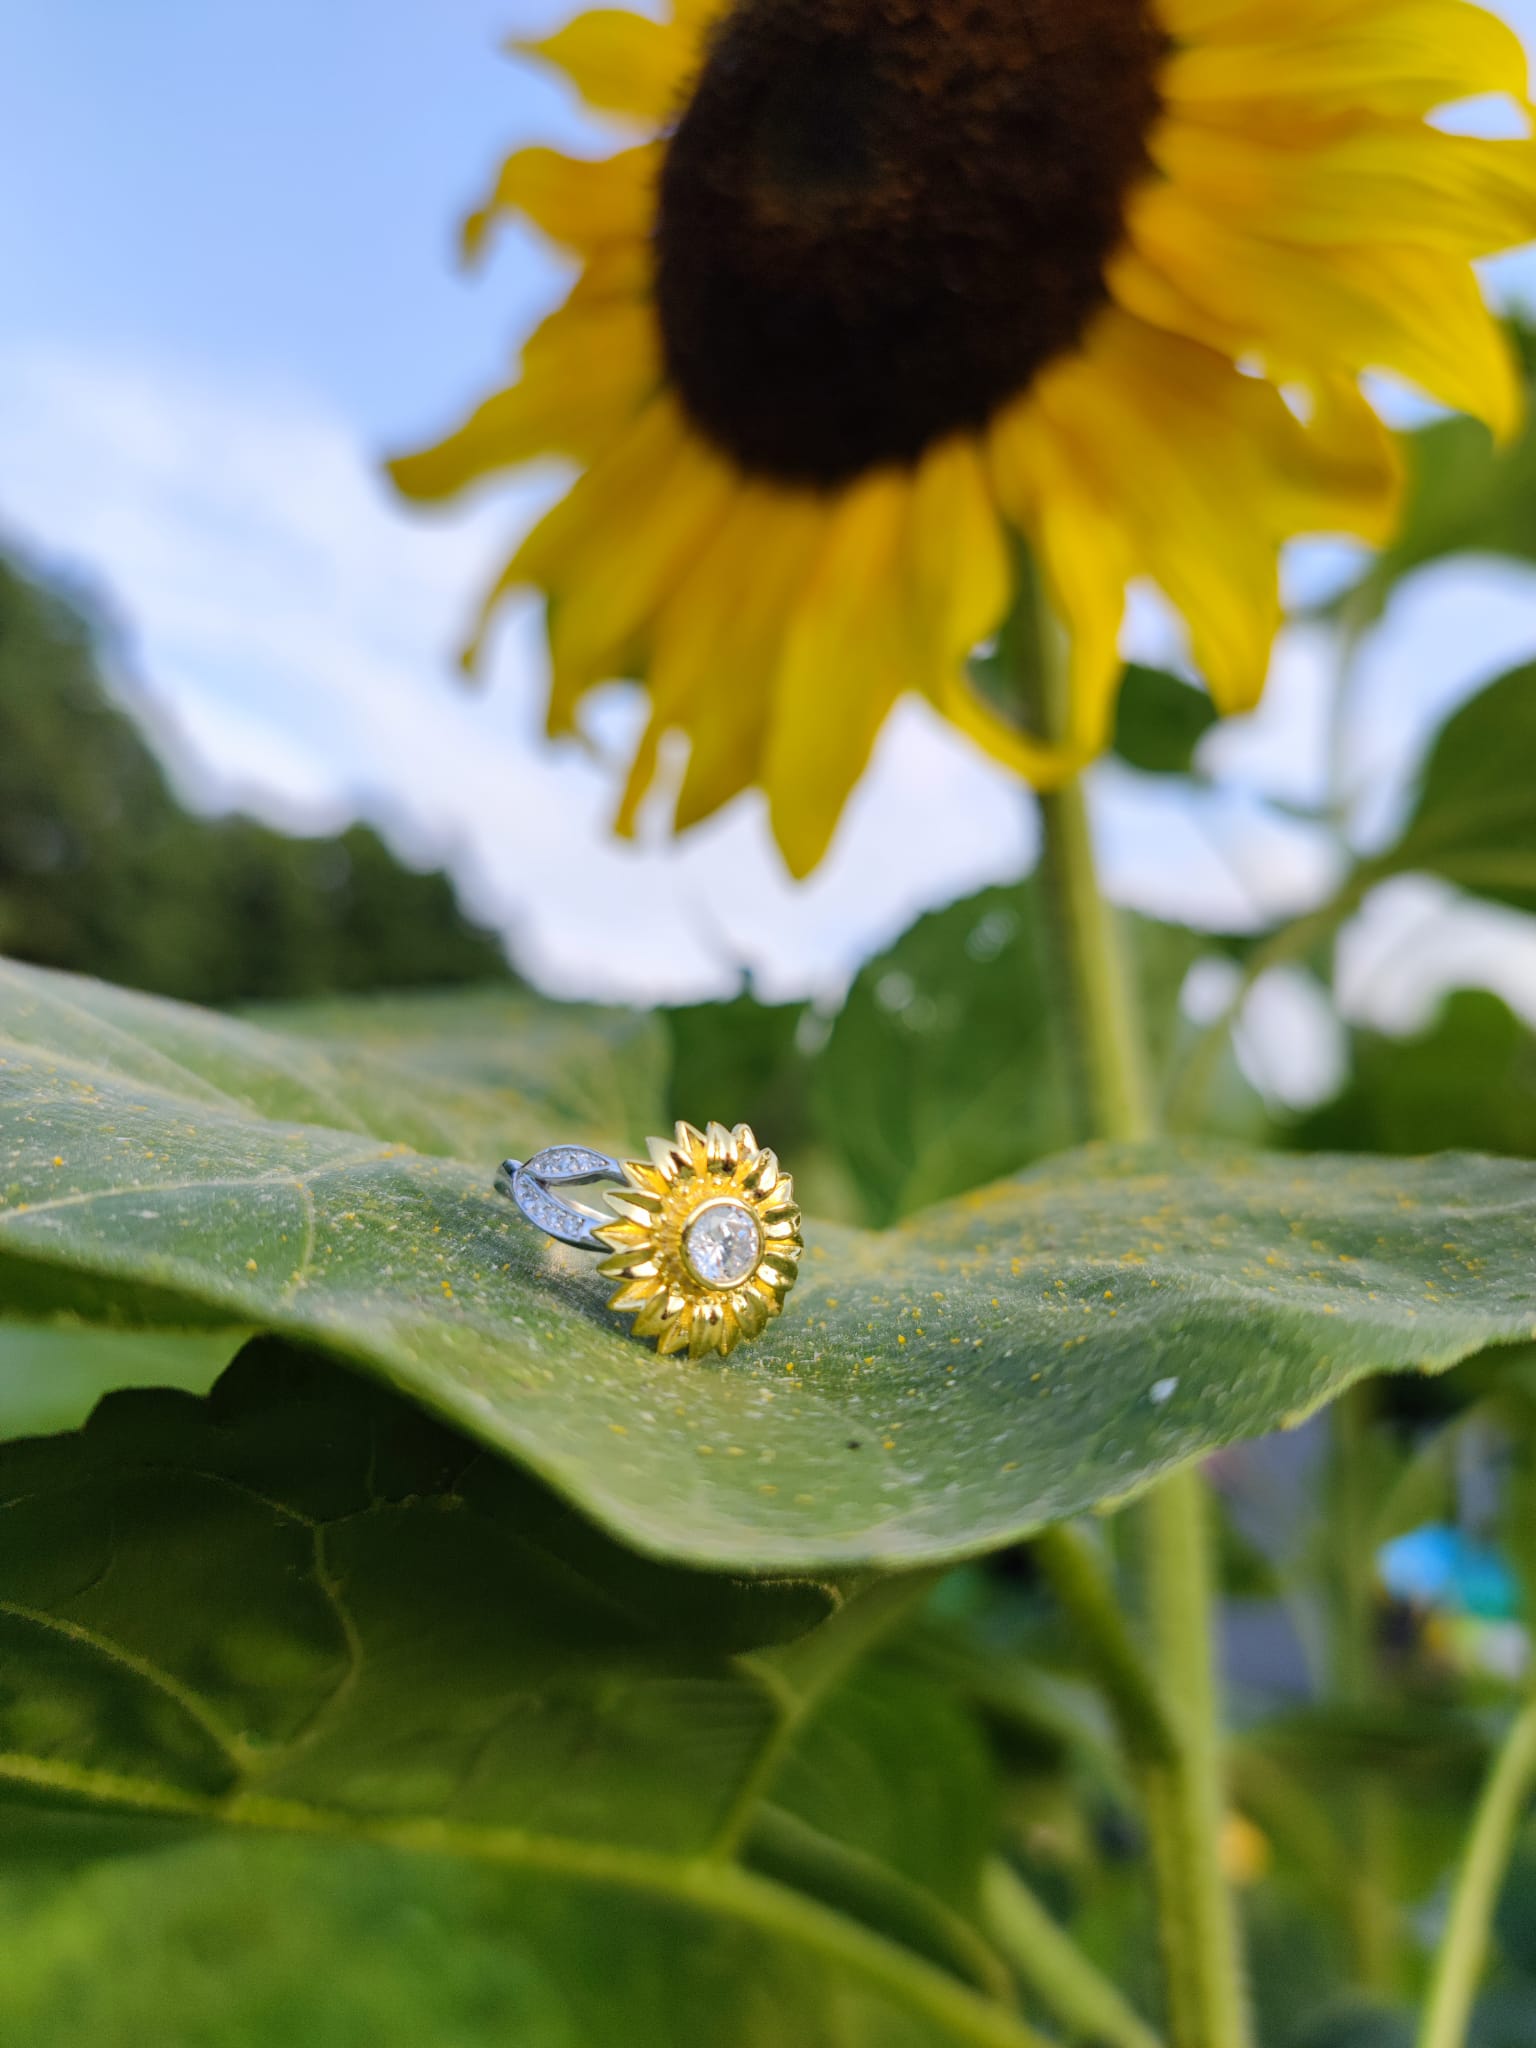 słonecznik - pierścionek z motywem kwiatowym na tle prawdziwej rośliny